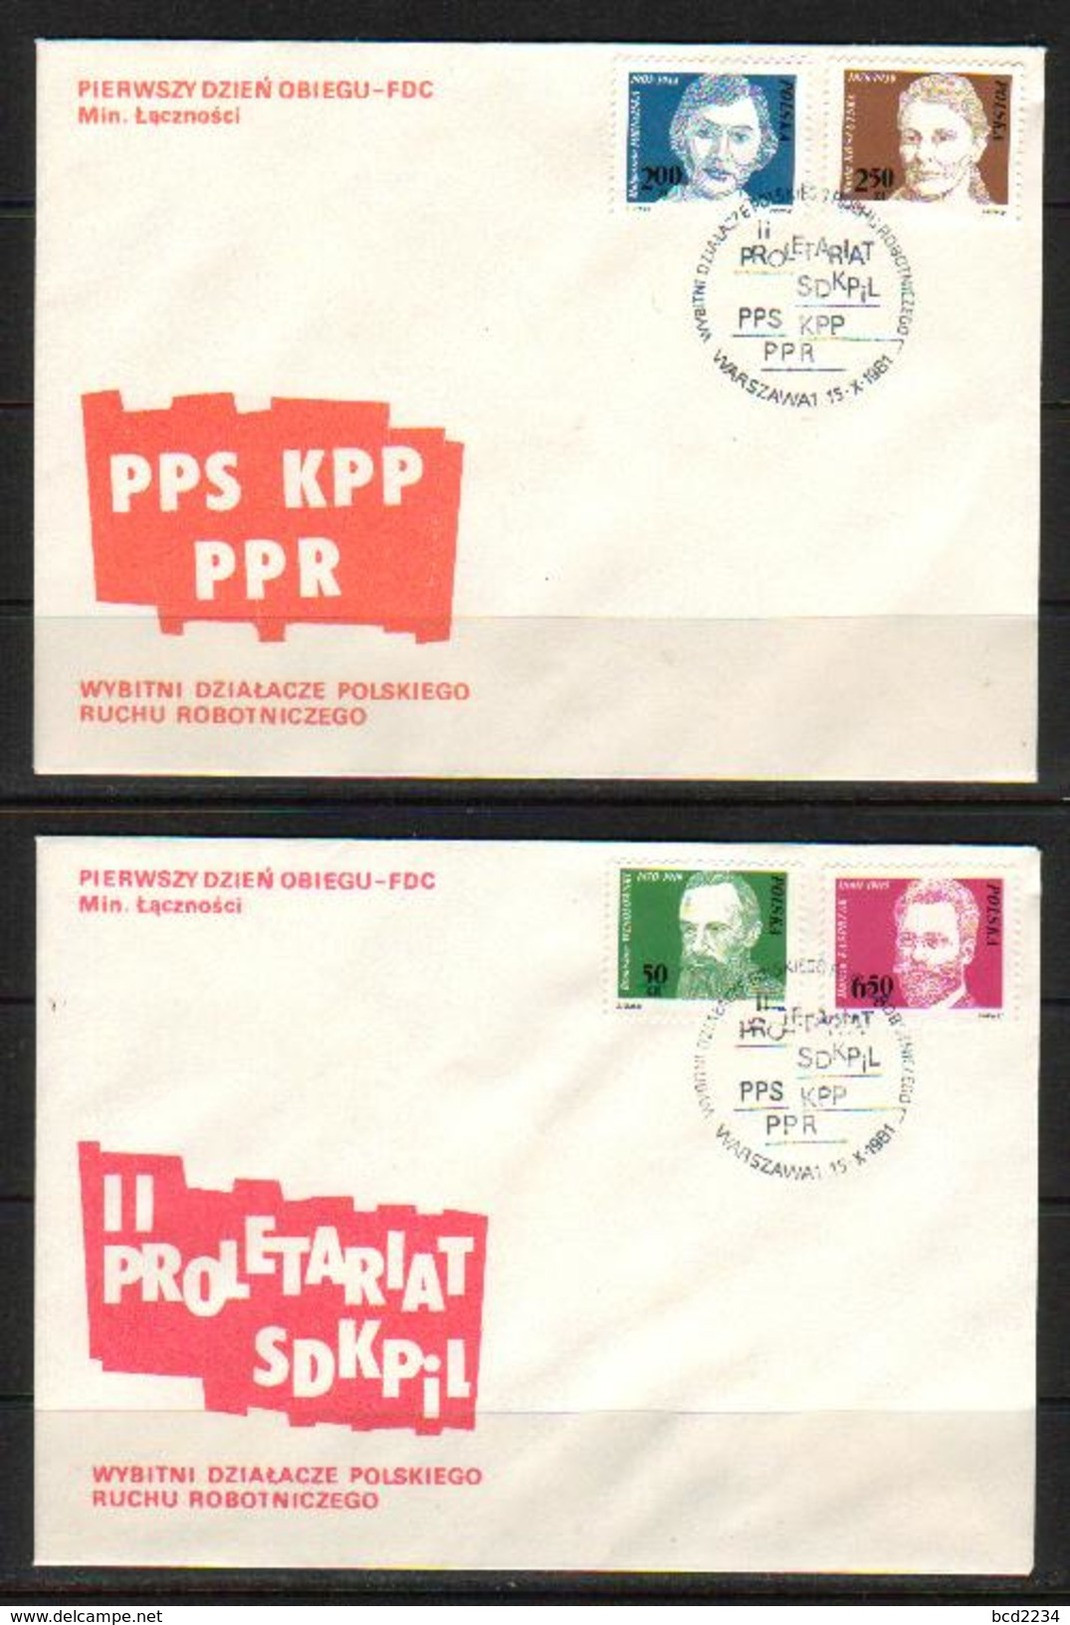 POLAND FDC 1981 FAMOUS WORKERS PARTY ACTIVISTS SET OF 4 COMMUNISM SOCIALISM POLITICIANS UNIONS Polen Pologne - FDC